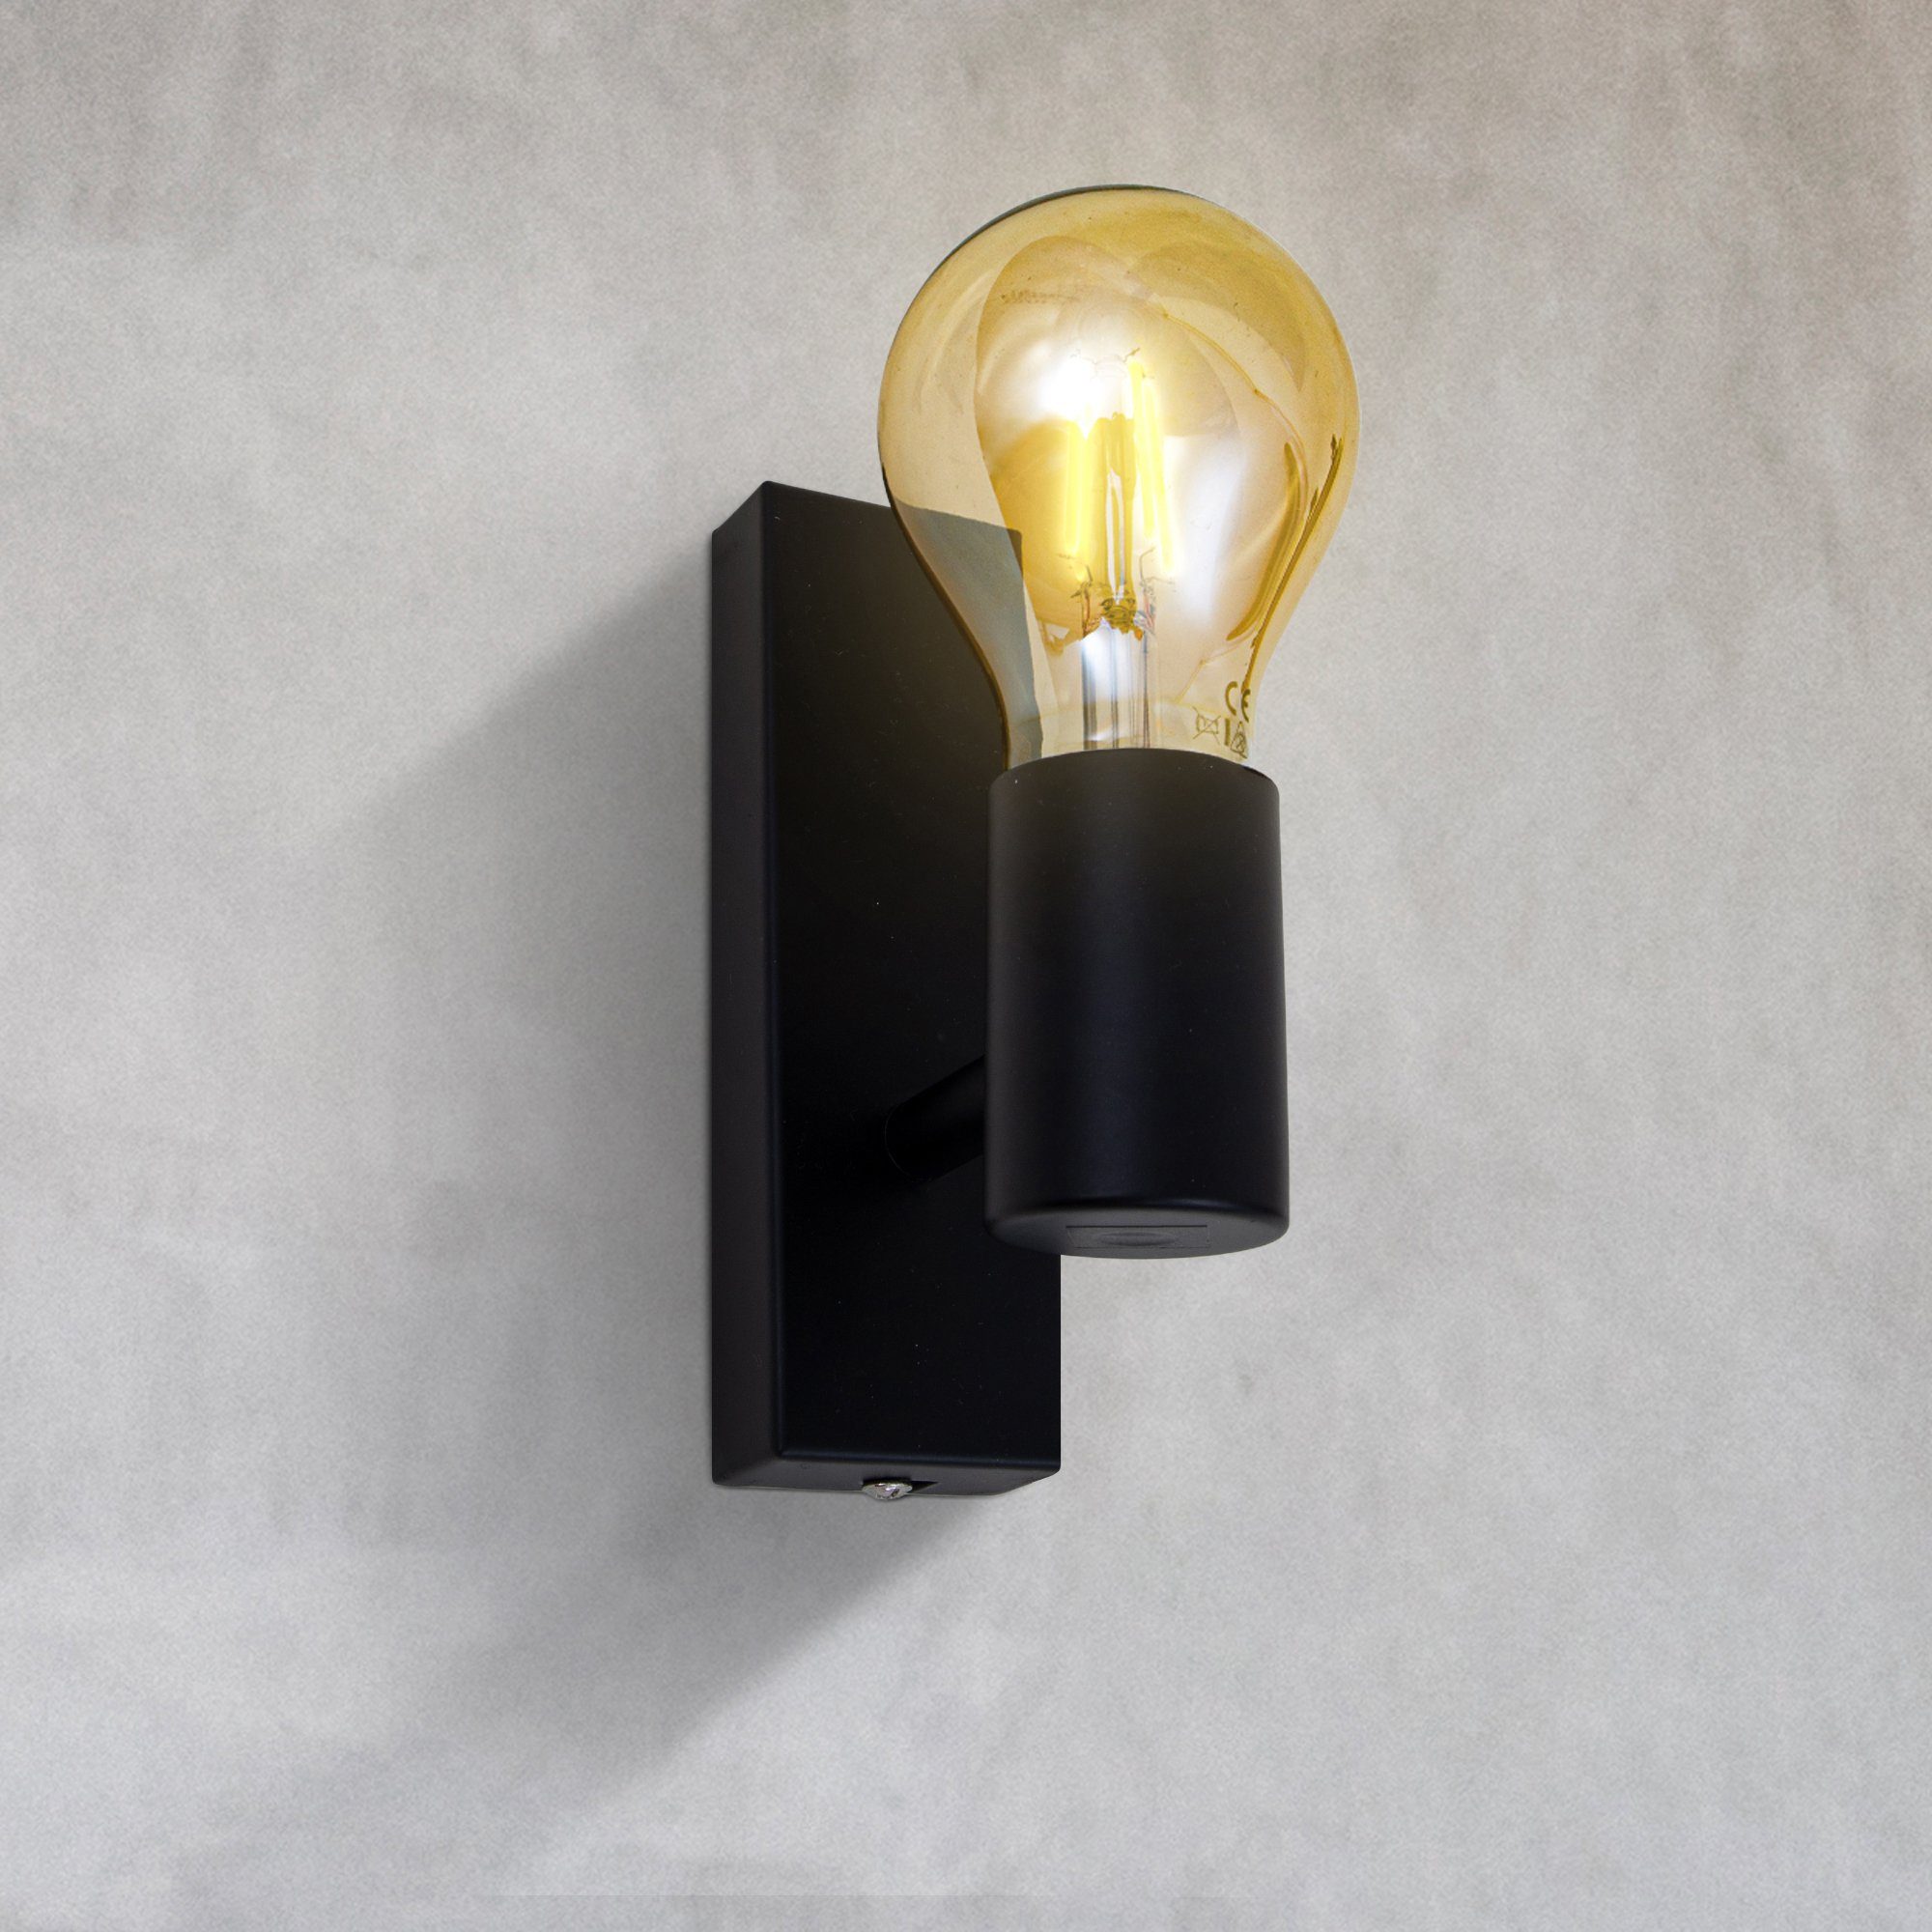 Retro Vintage Wandleuchte, wechselbar, E27 Wohnzimmer Warmweiß, B.K.Licht Leuchtmittel Wandspot LED matt Wandlampe Industrie Flur